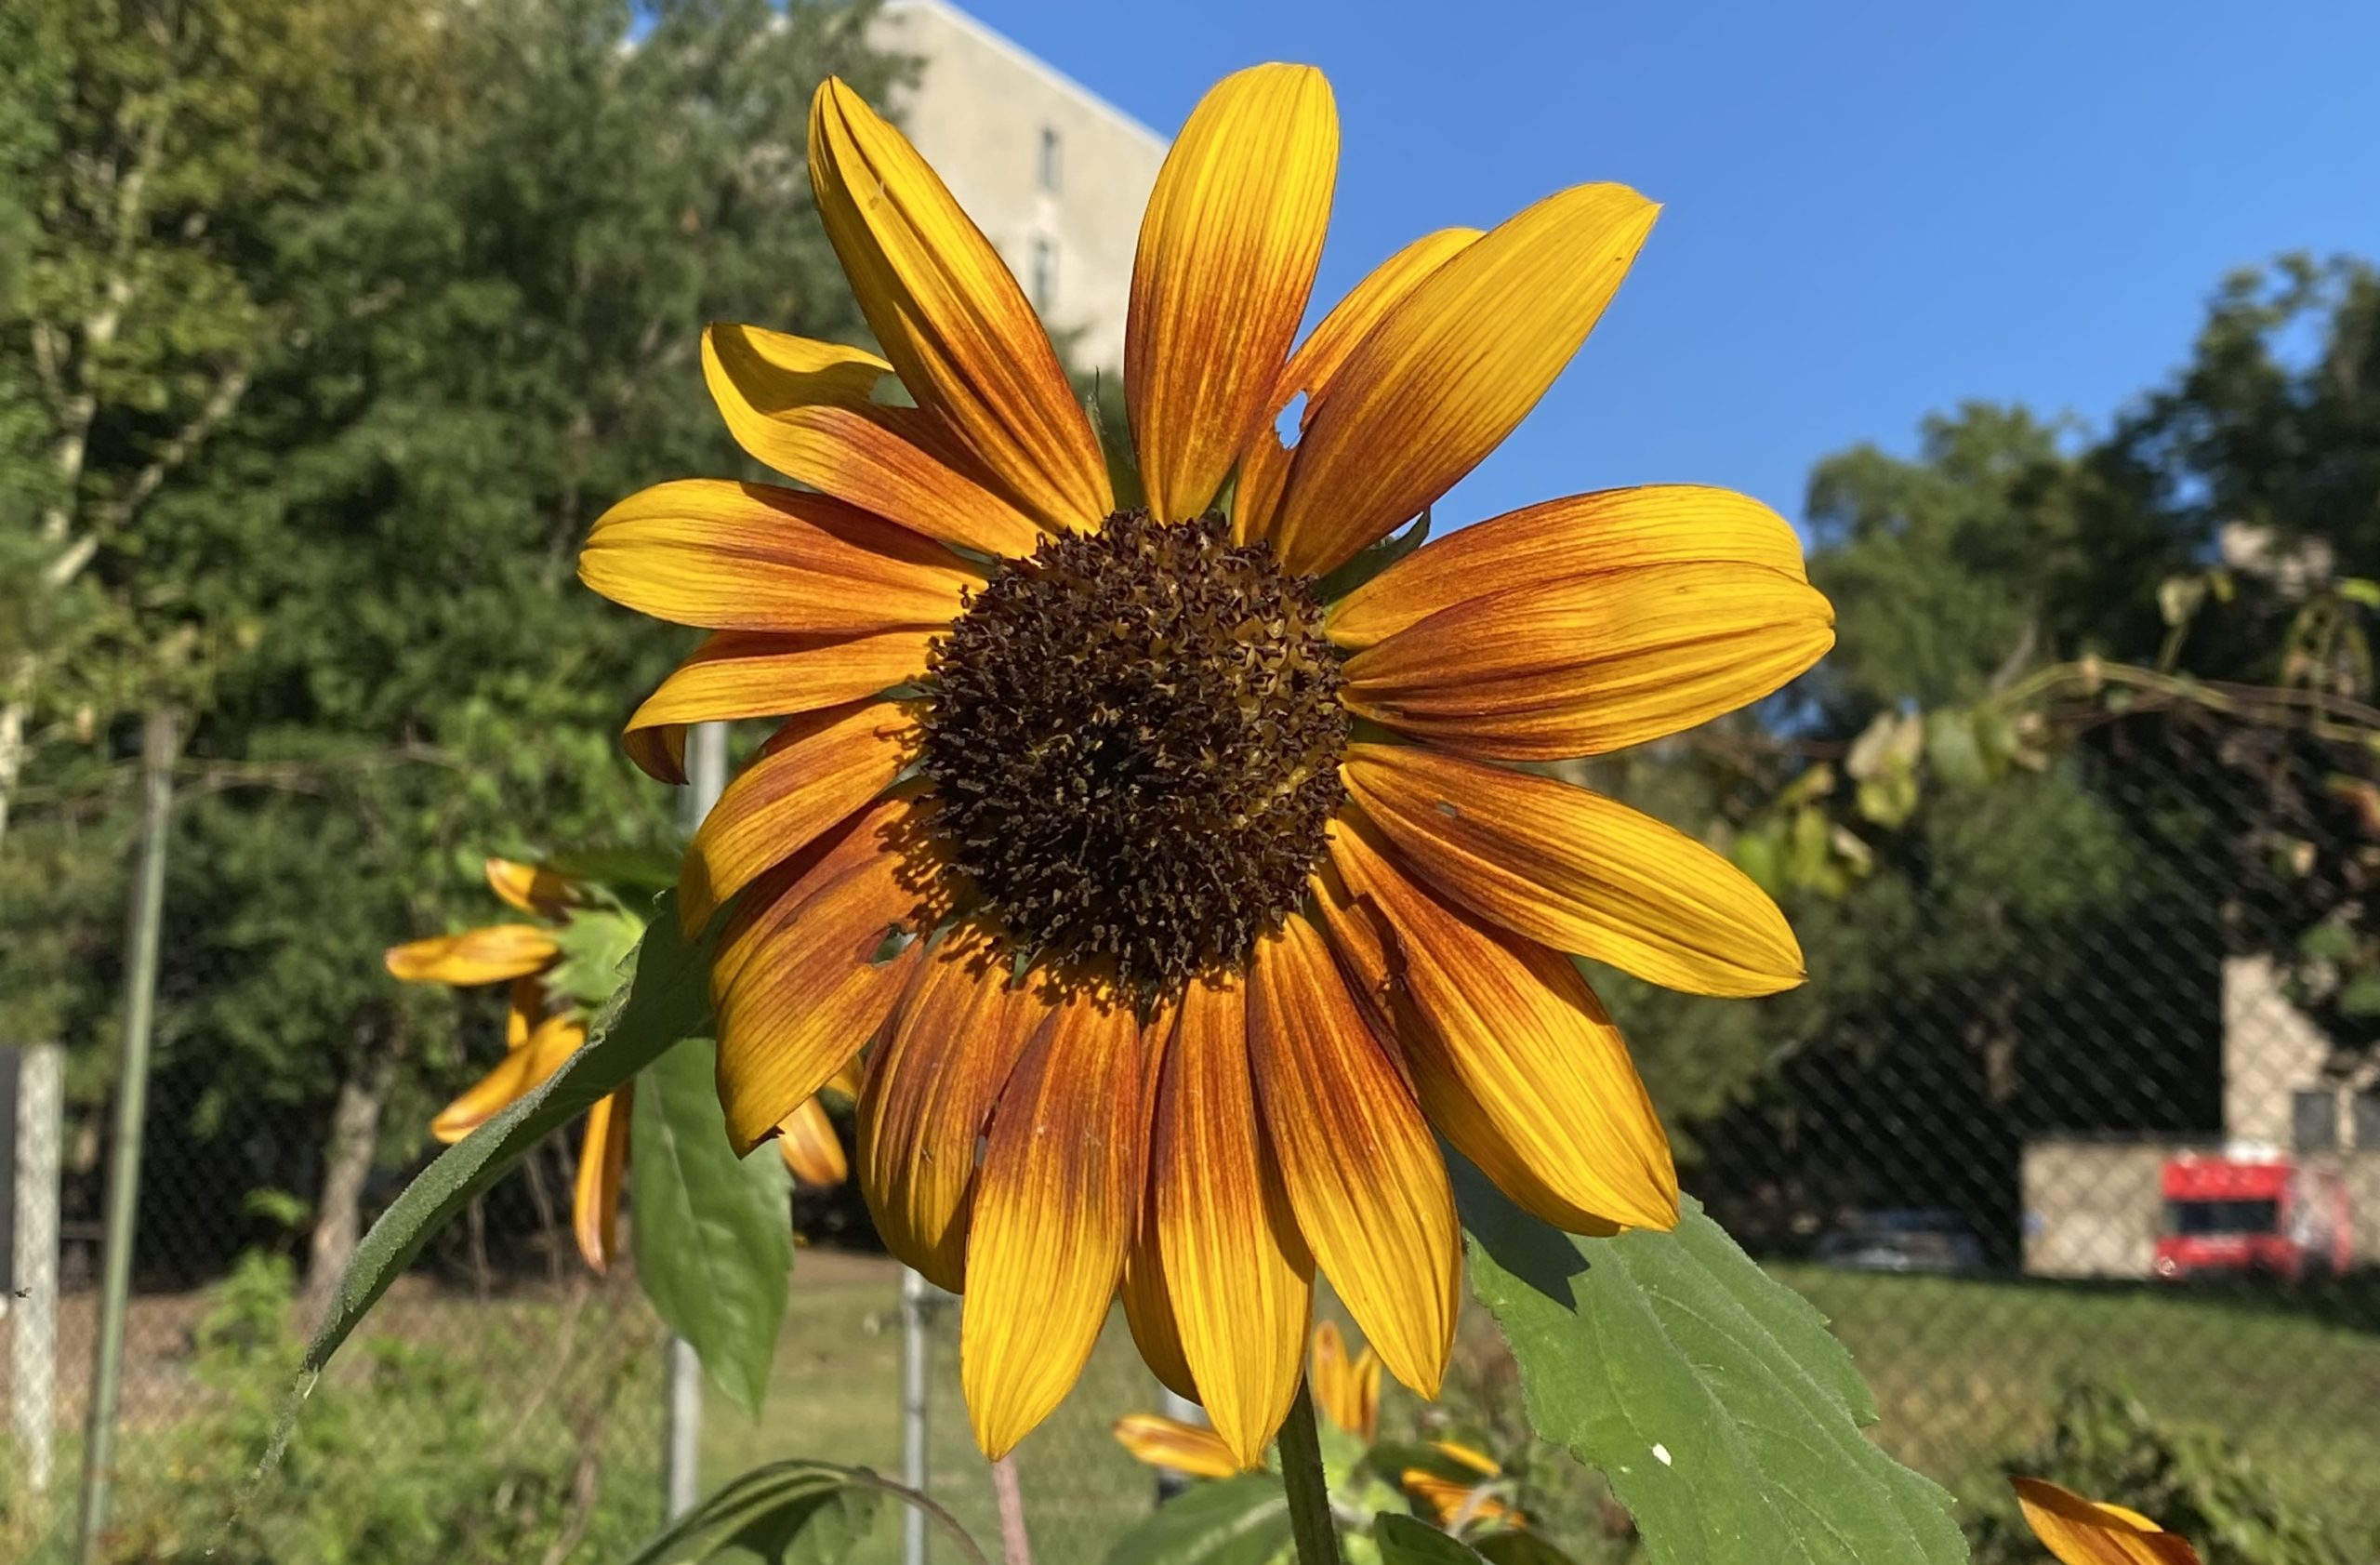 Sunflower in bloom, Summer 2021